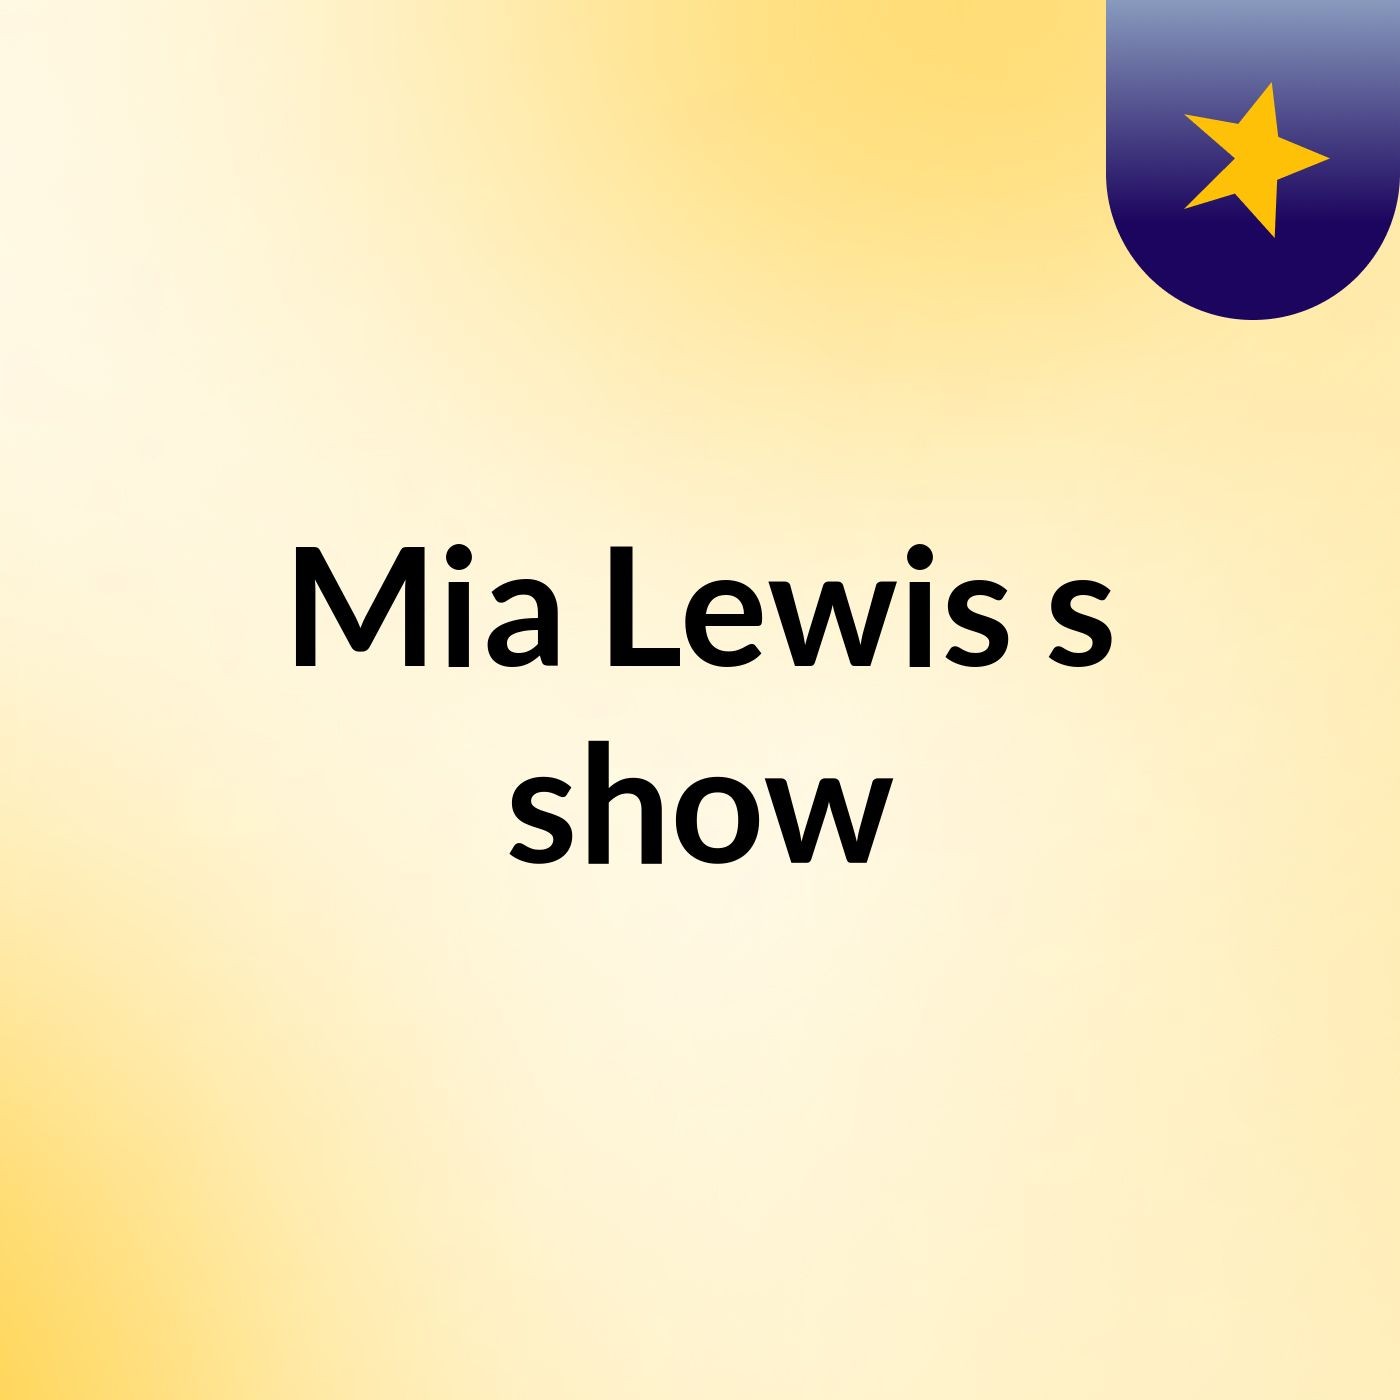 Mia Lewis's show